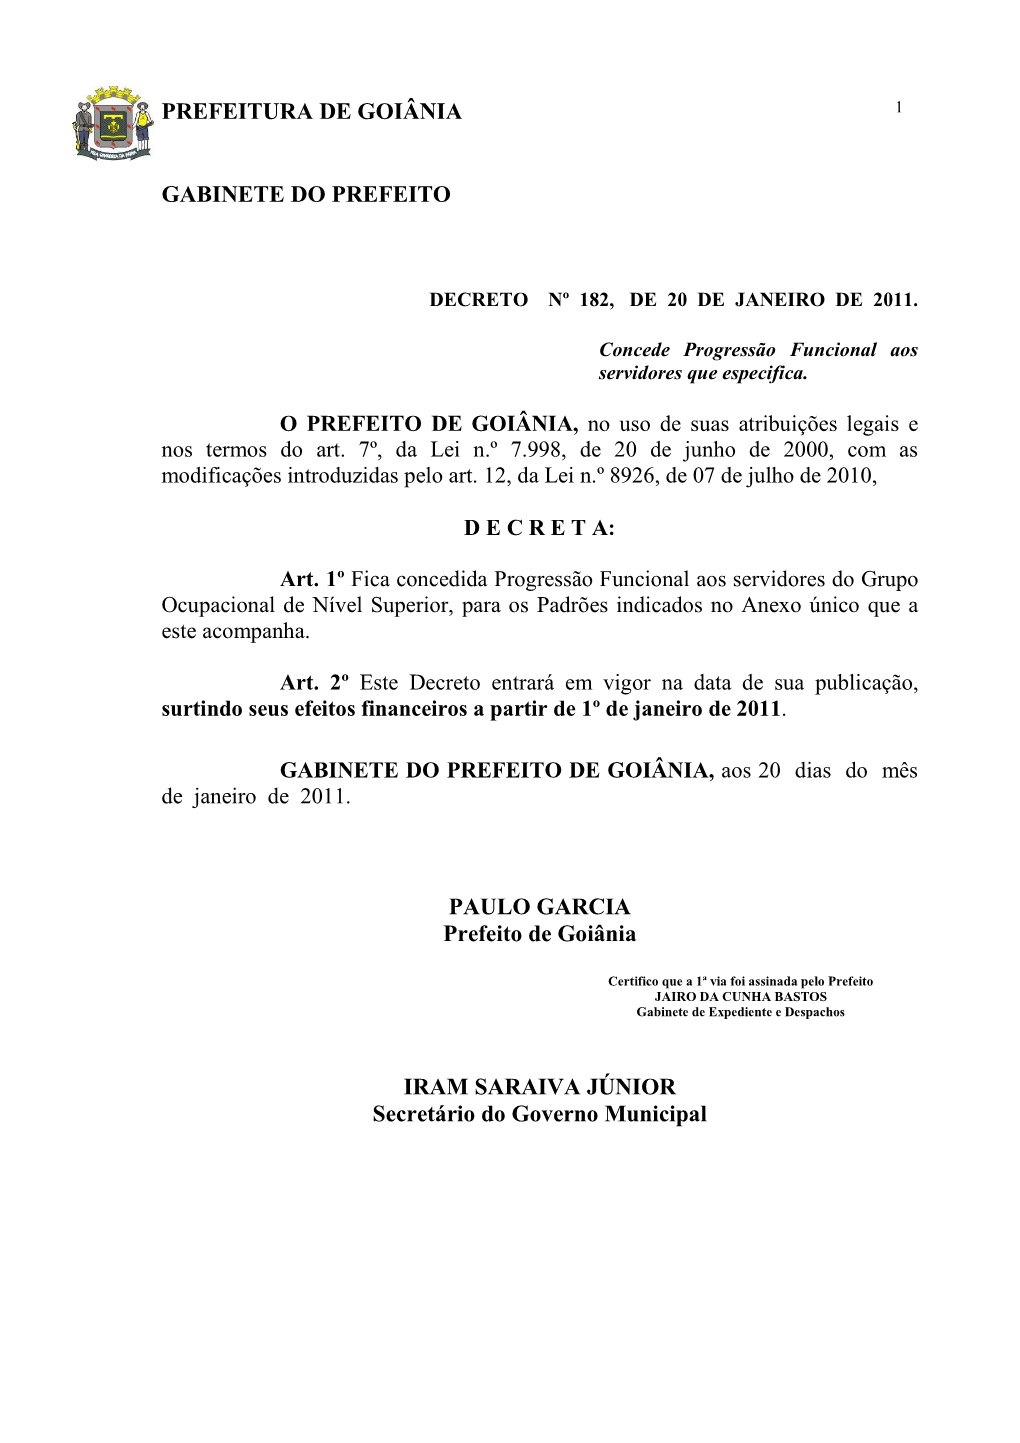 Decreto N. 182 De 20/01/2011